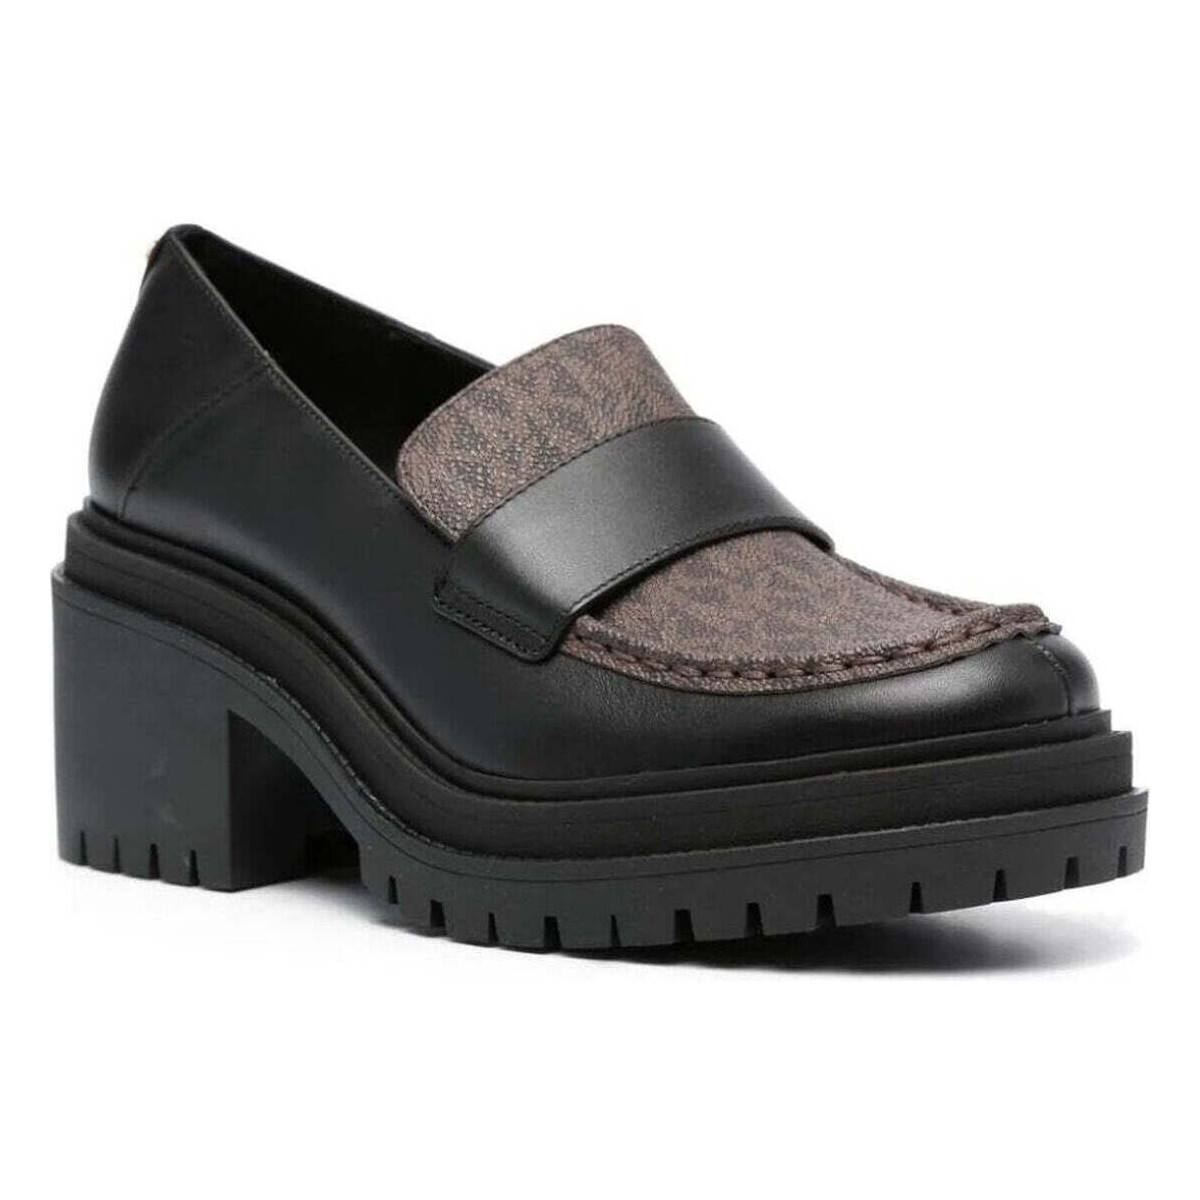 Chaussures Femme Mocassins MICHAEL Michael Kors rocco heeled loafer Noir